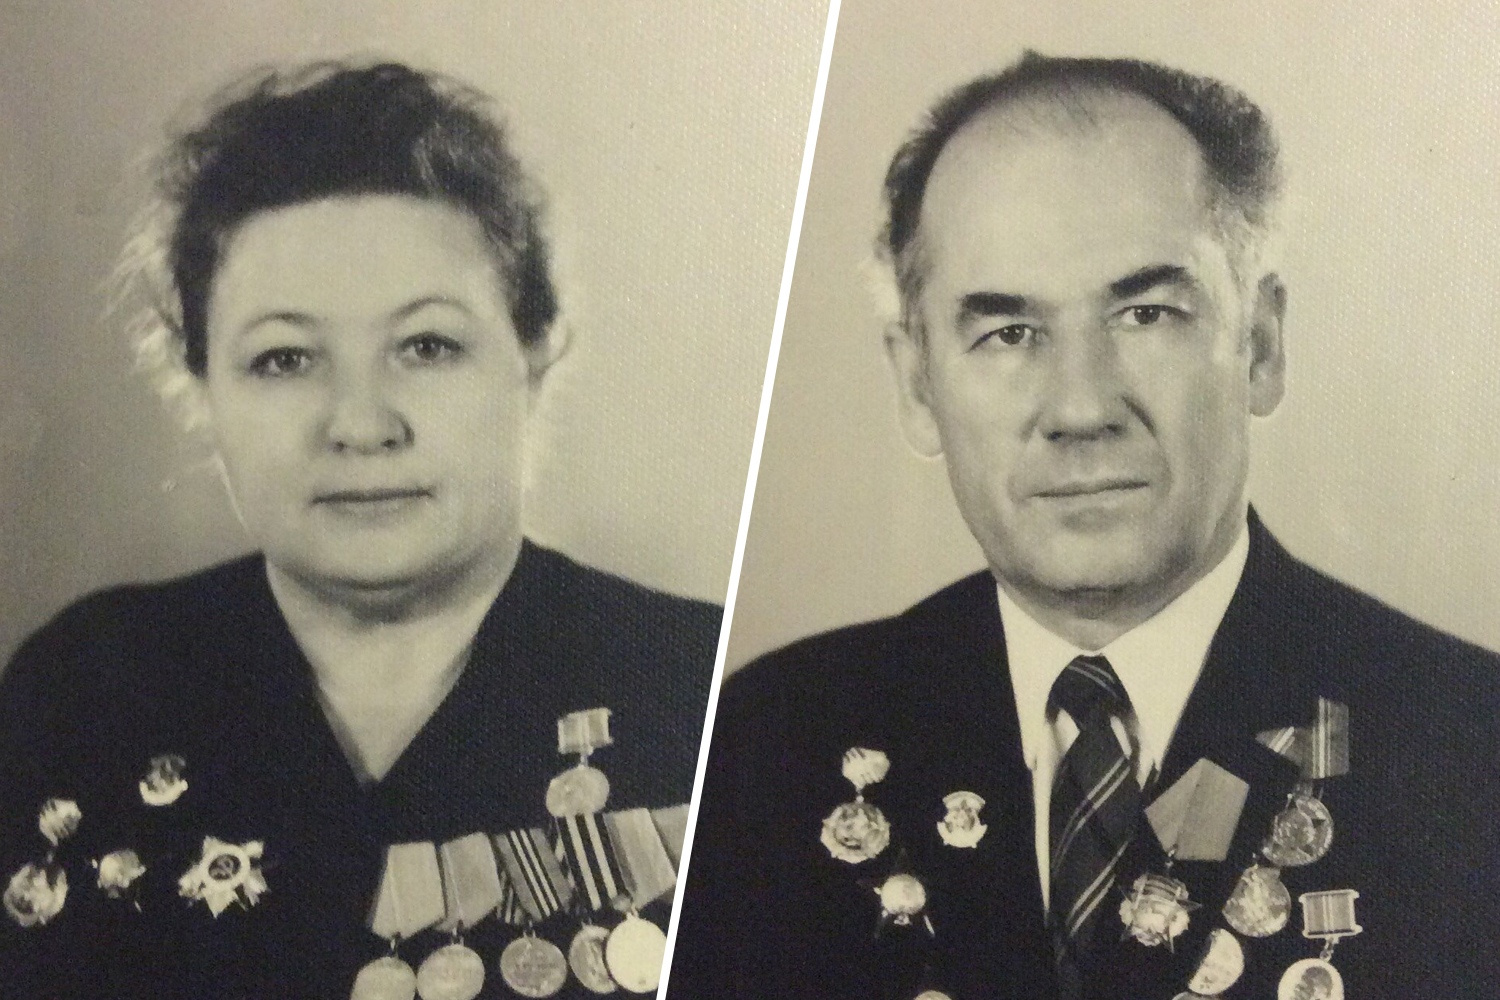 Супруги всю жизнь проработали в областной больнице в Челябинске. Василий Георгиевич был главным рентгенологом области